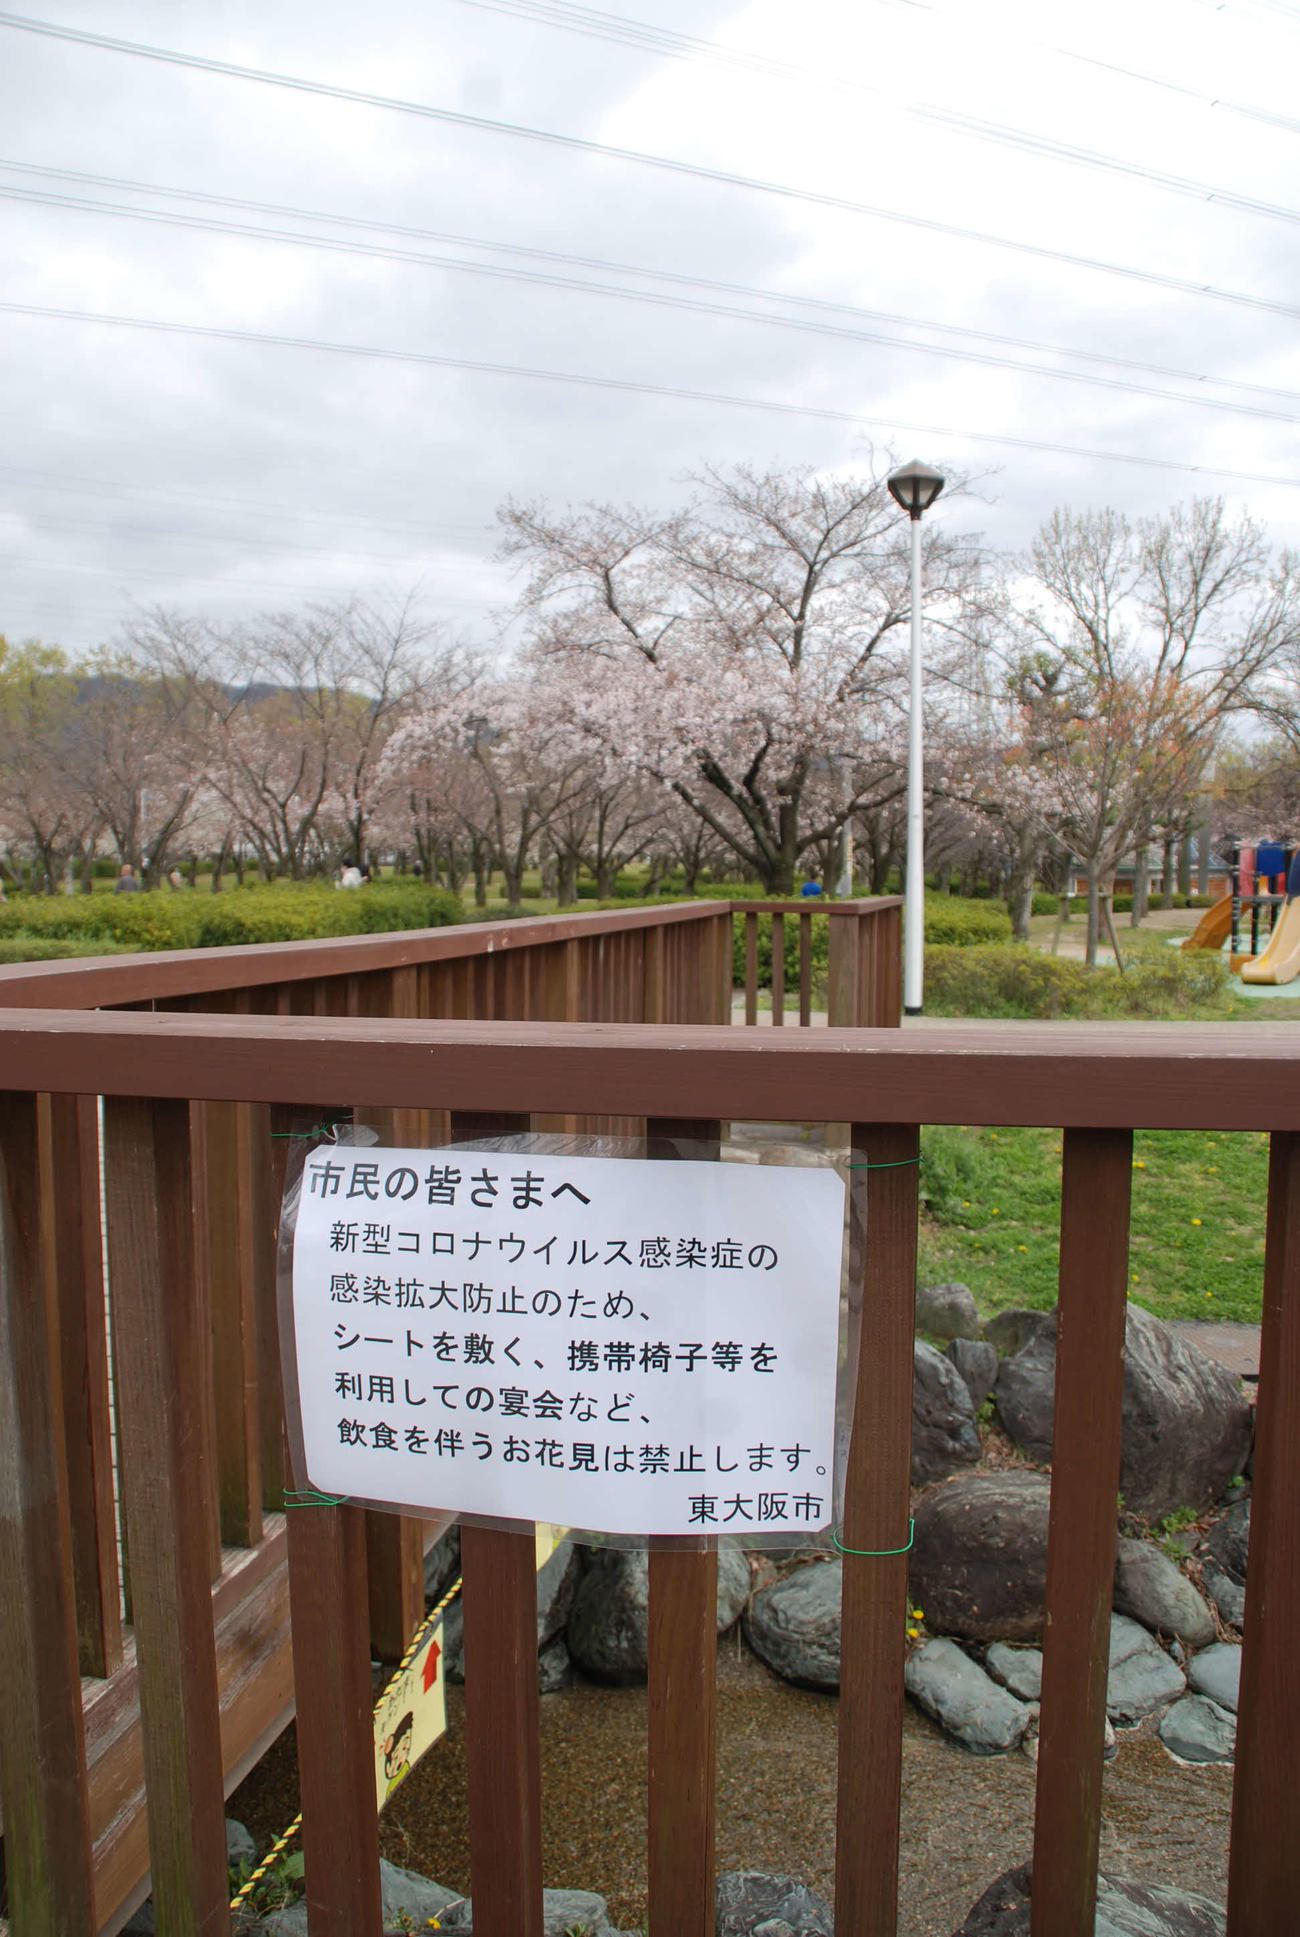 東大阪市の花園中央公園の「飲食を伴う花見は禁止」を伝える貼り紙（撮影・松浦隆司）